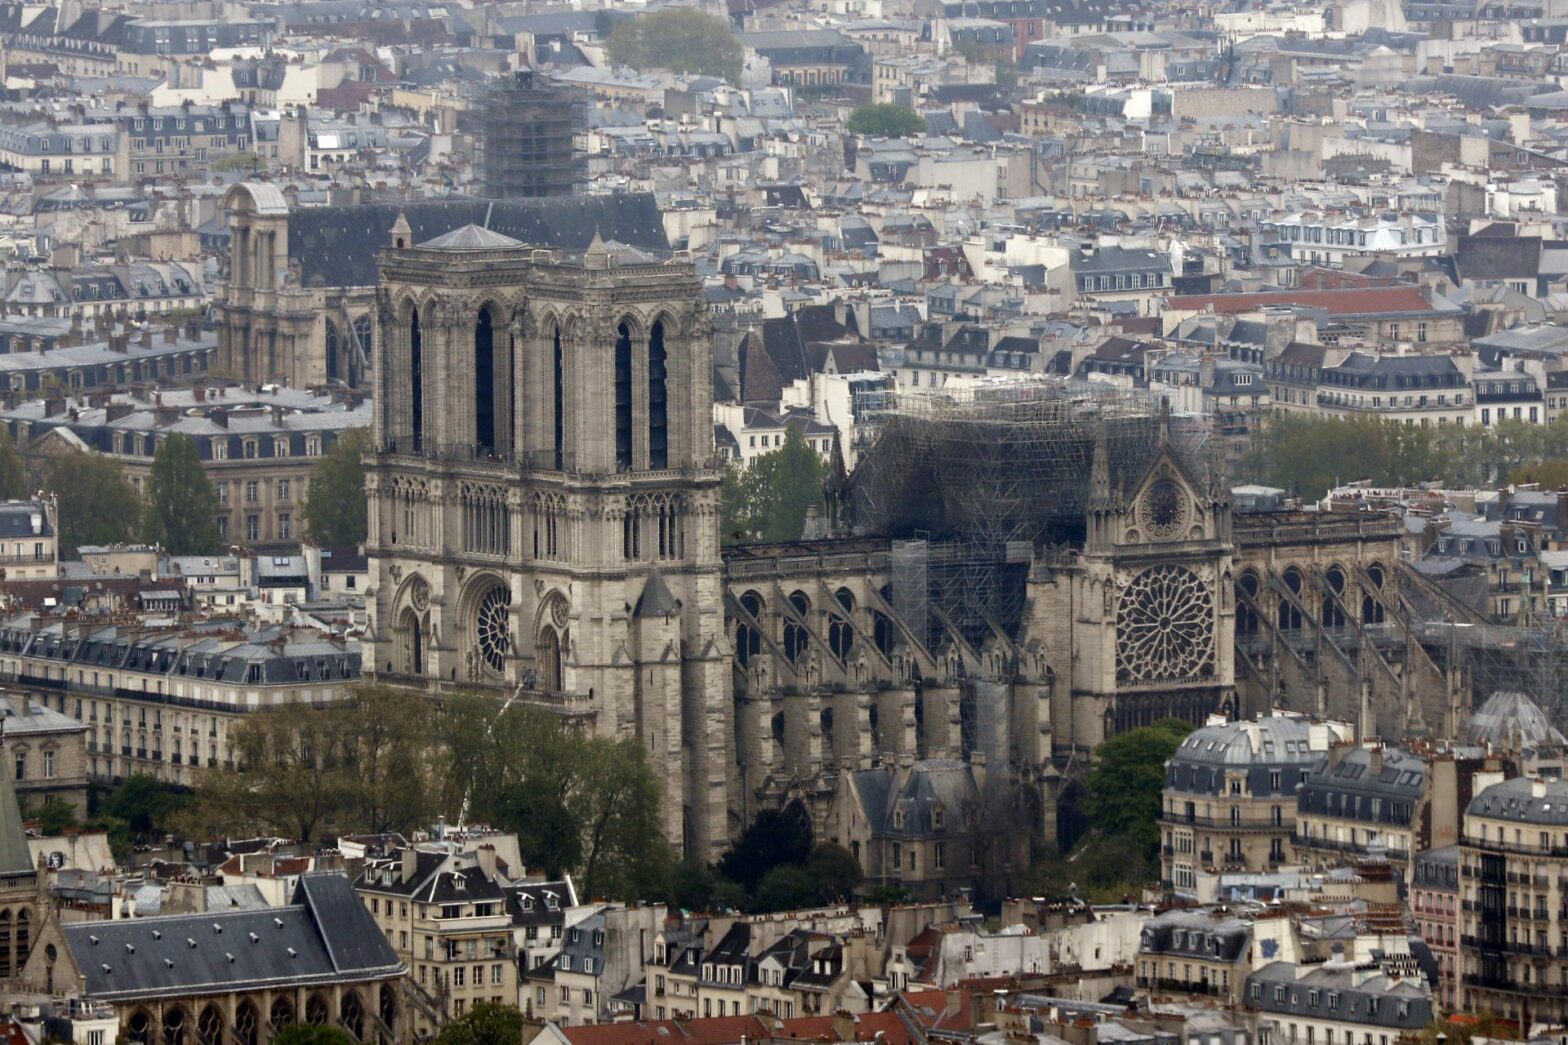 katedrála Notre-Dame